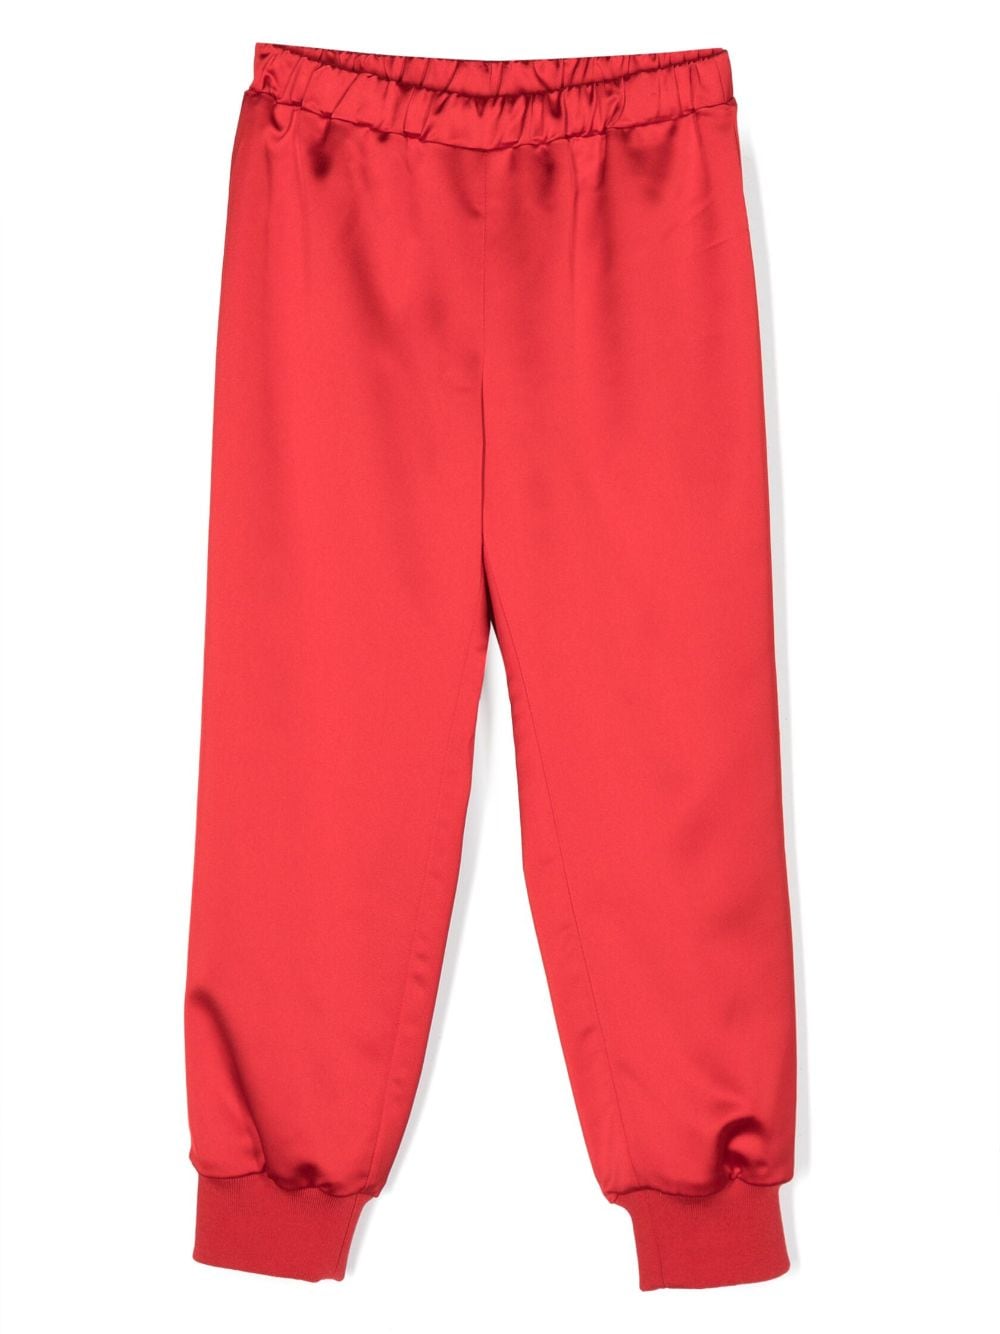 Pantalon rouge pour fille, avec taille et chevilles élastiquées